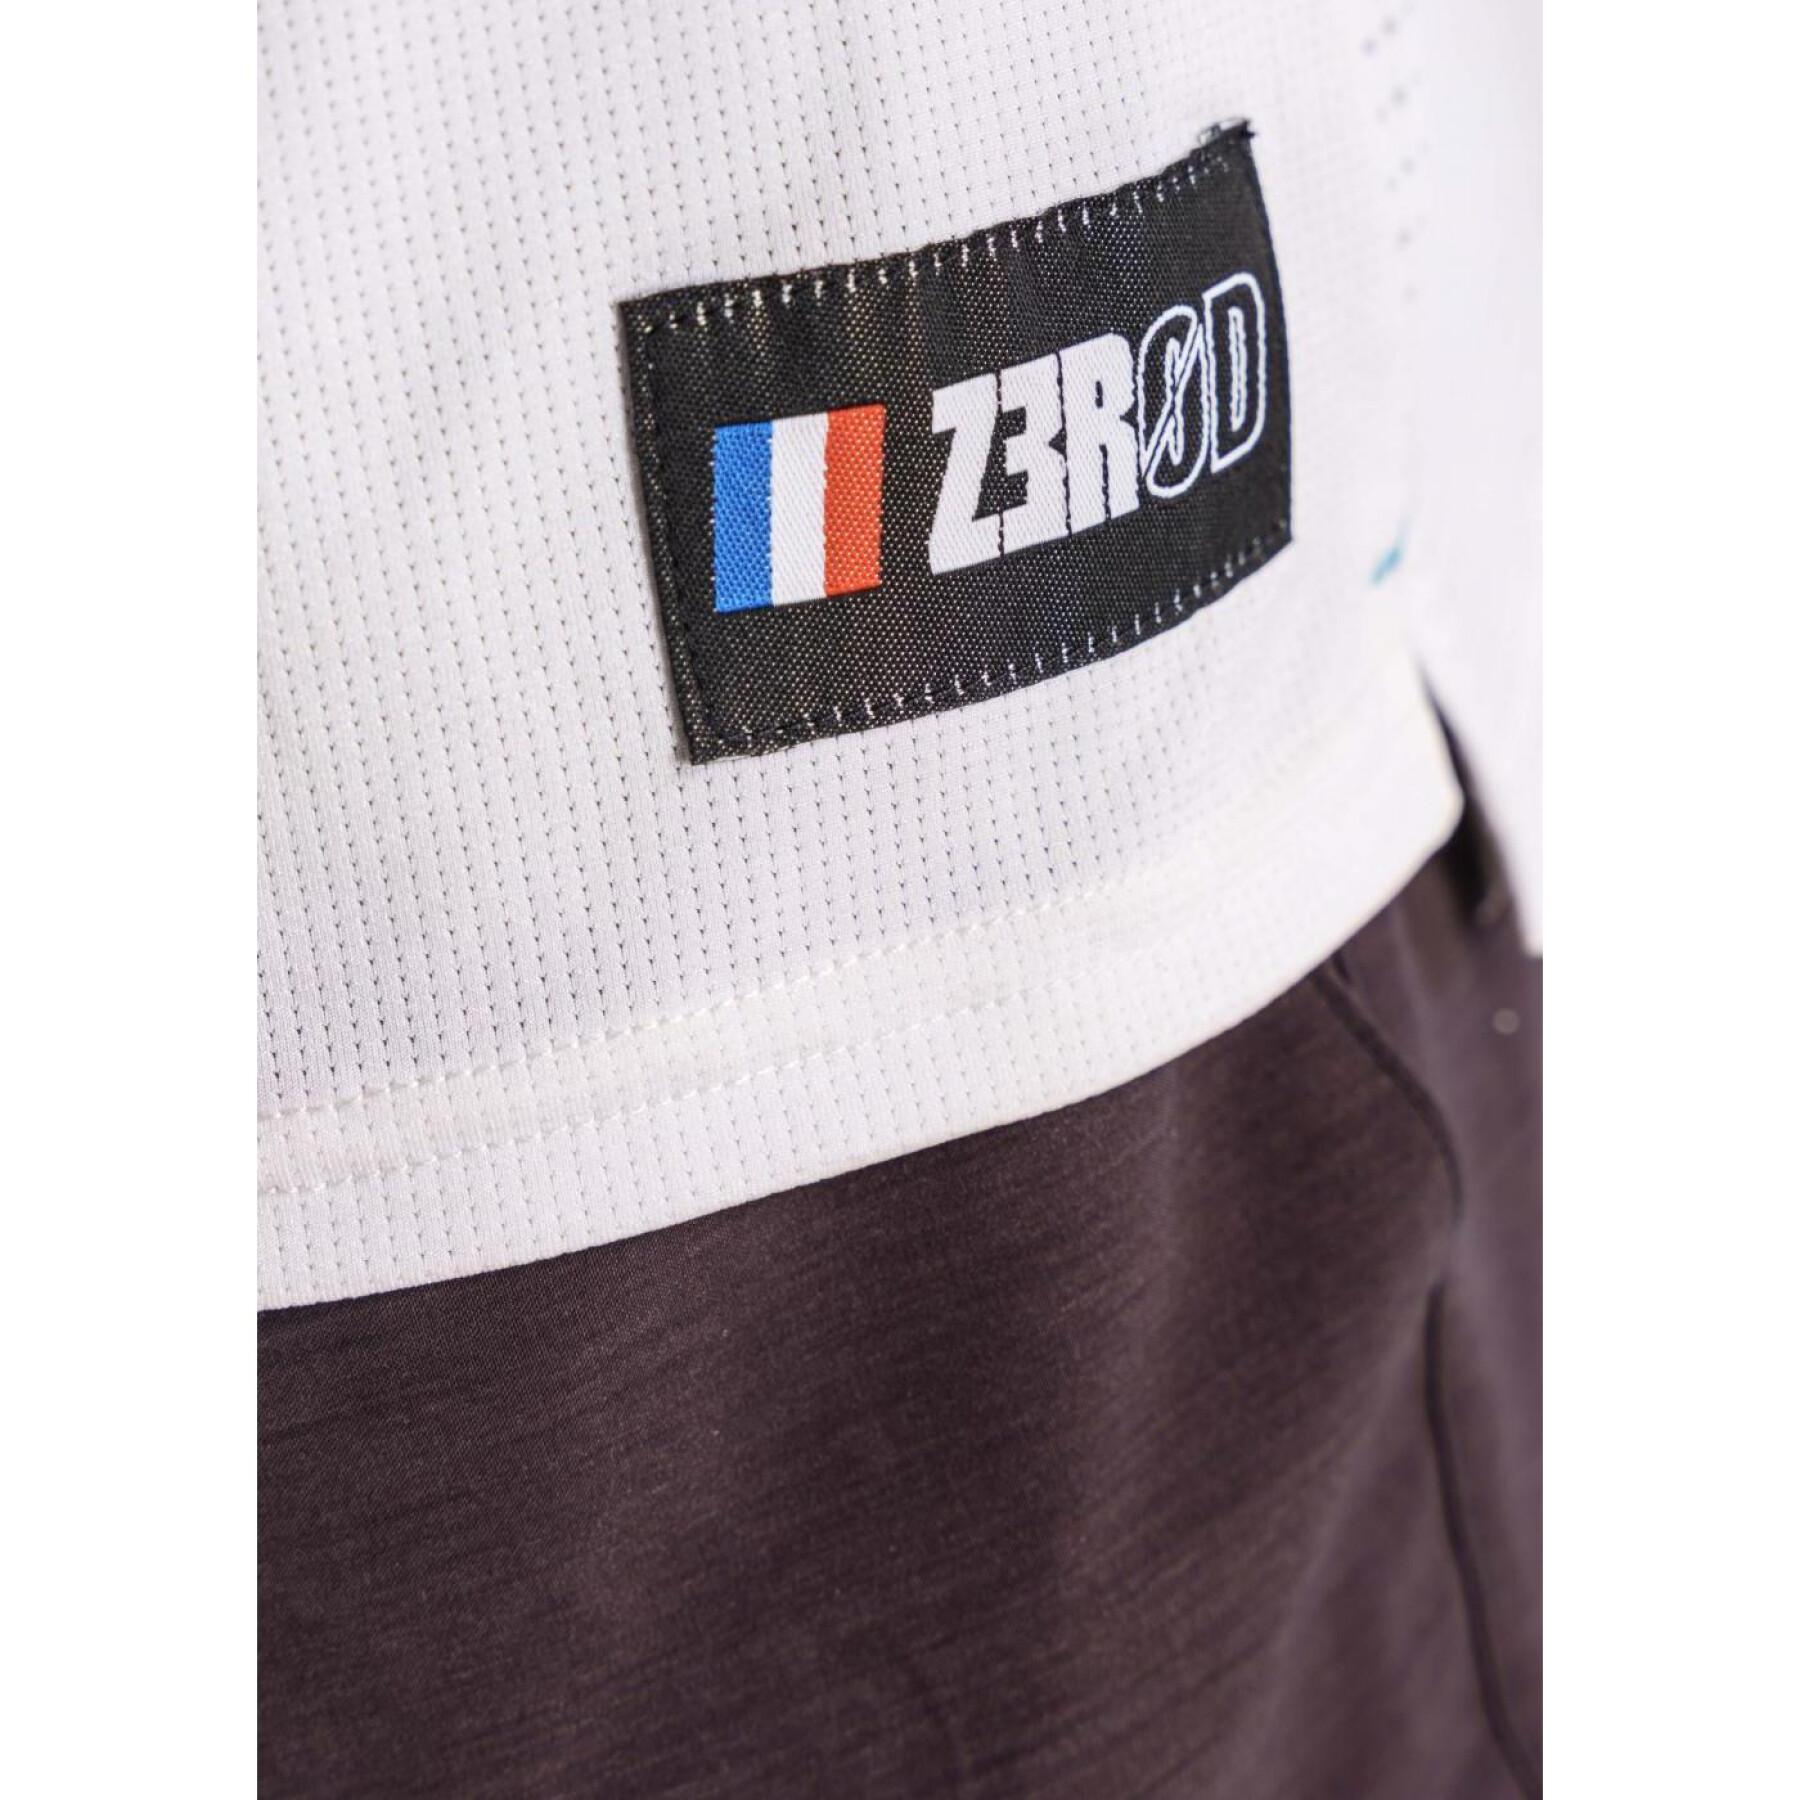 T-Shirt Z3R0D